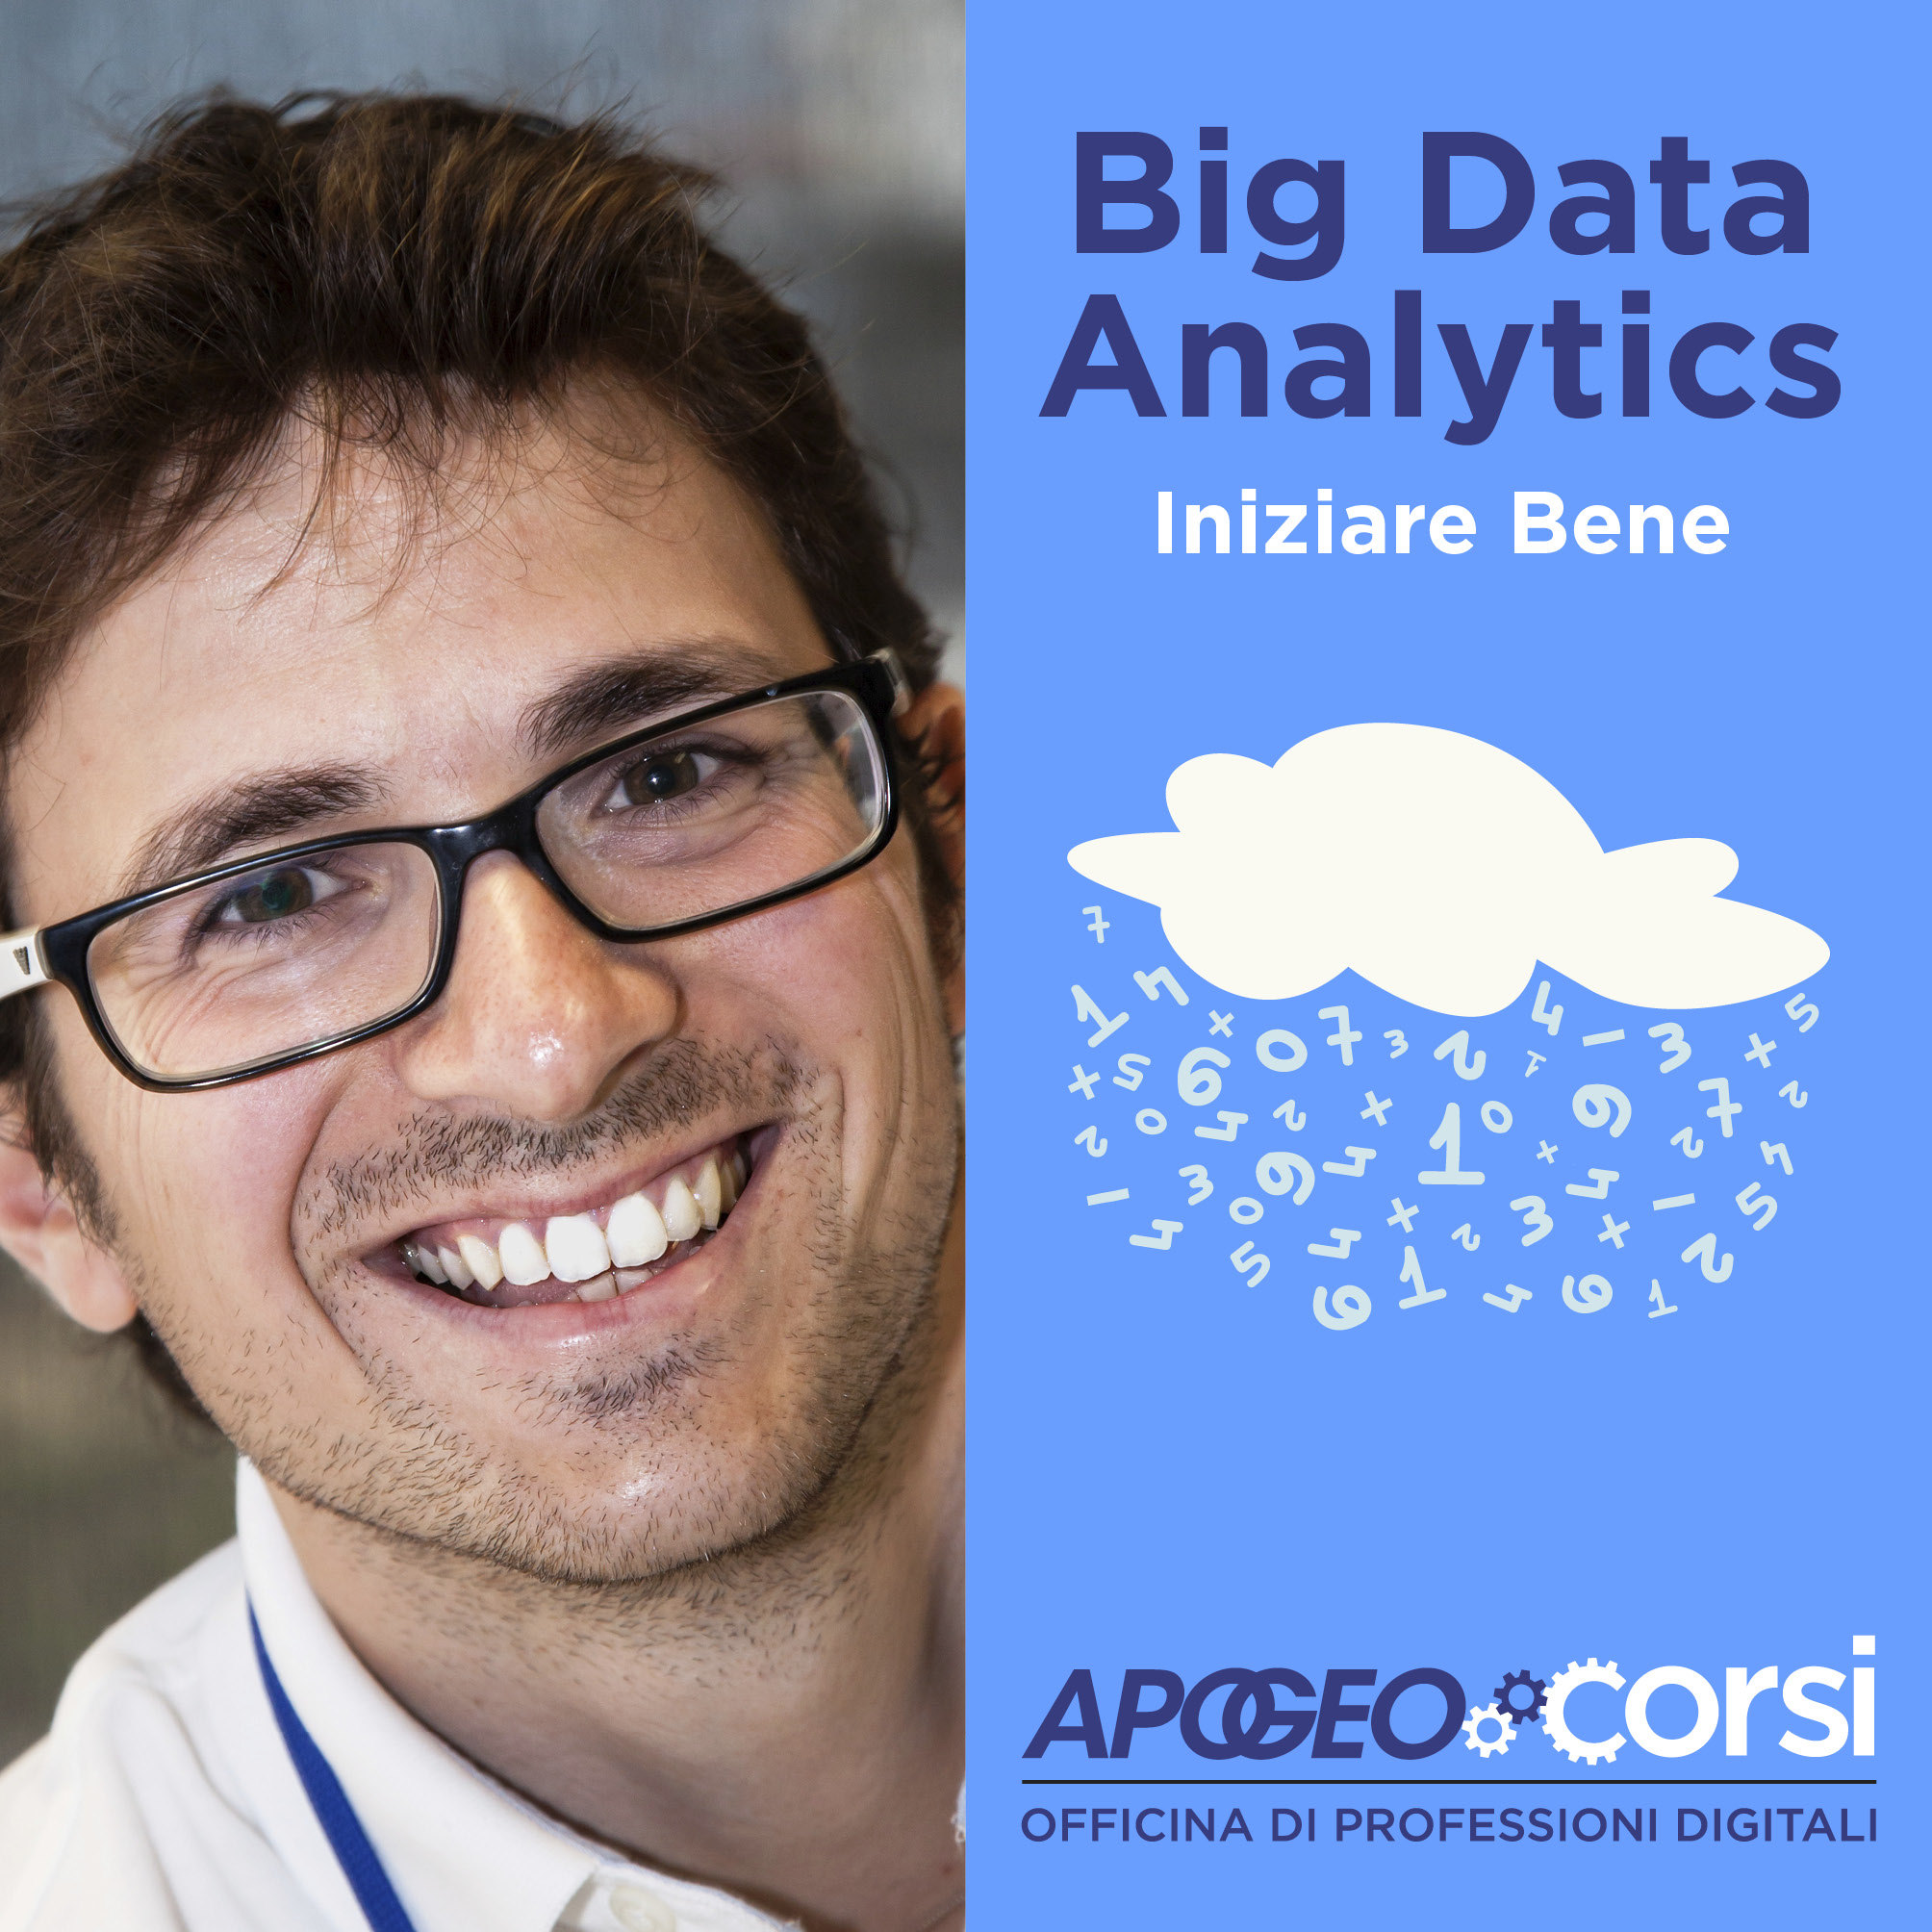 Big-data-analytics-iniziare-bene-cover